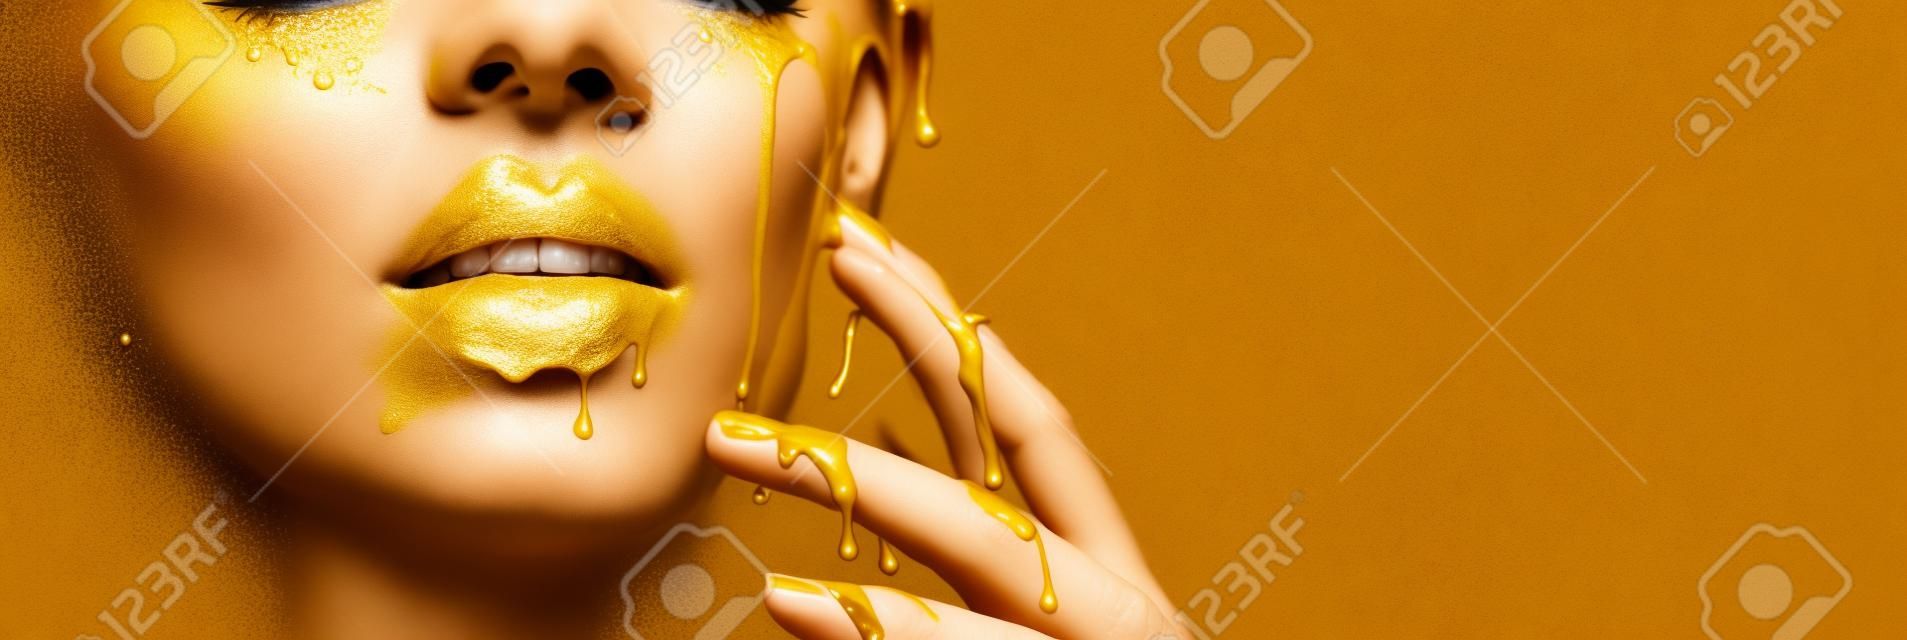 Złota farba rozmazuje się z ust i dłoni, złoty płyn spada na usta pięknej modelki, kreatywny abstrakcyjny makijaż. Piękna twarz kobiety